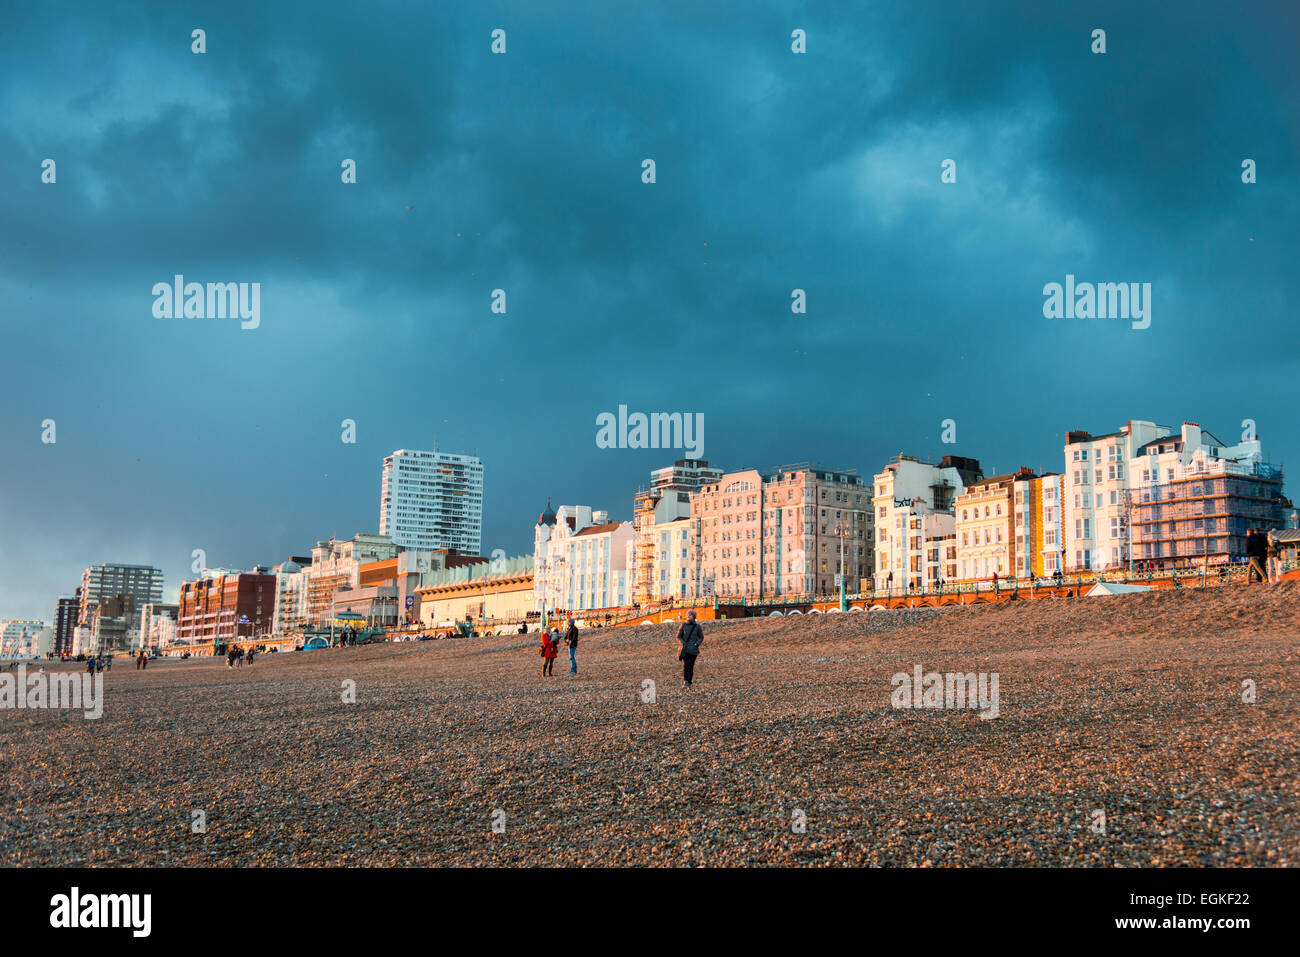 Sonne, Strand, Hotels und Gebäude am Strand von Brighton über einen stürmischen Abend und einem schwarzen wolkigen Himmel Beleuchtung Stockfoto